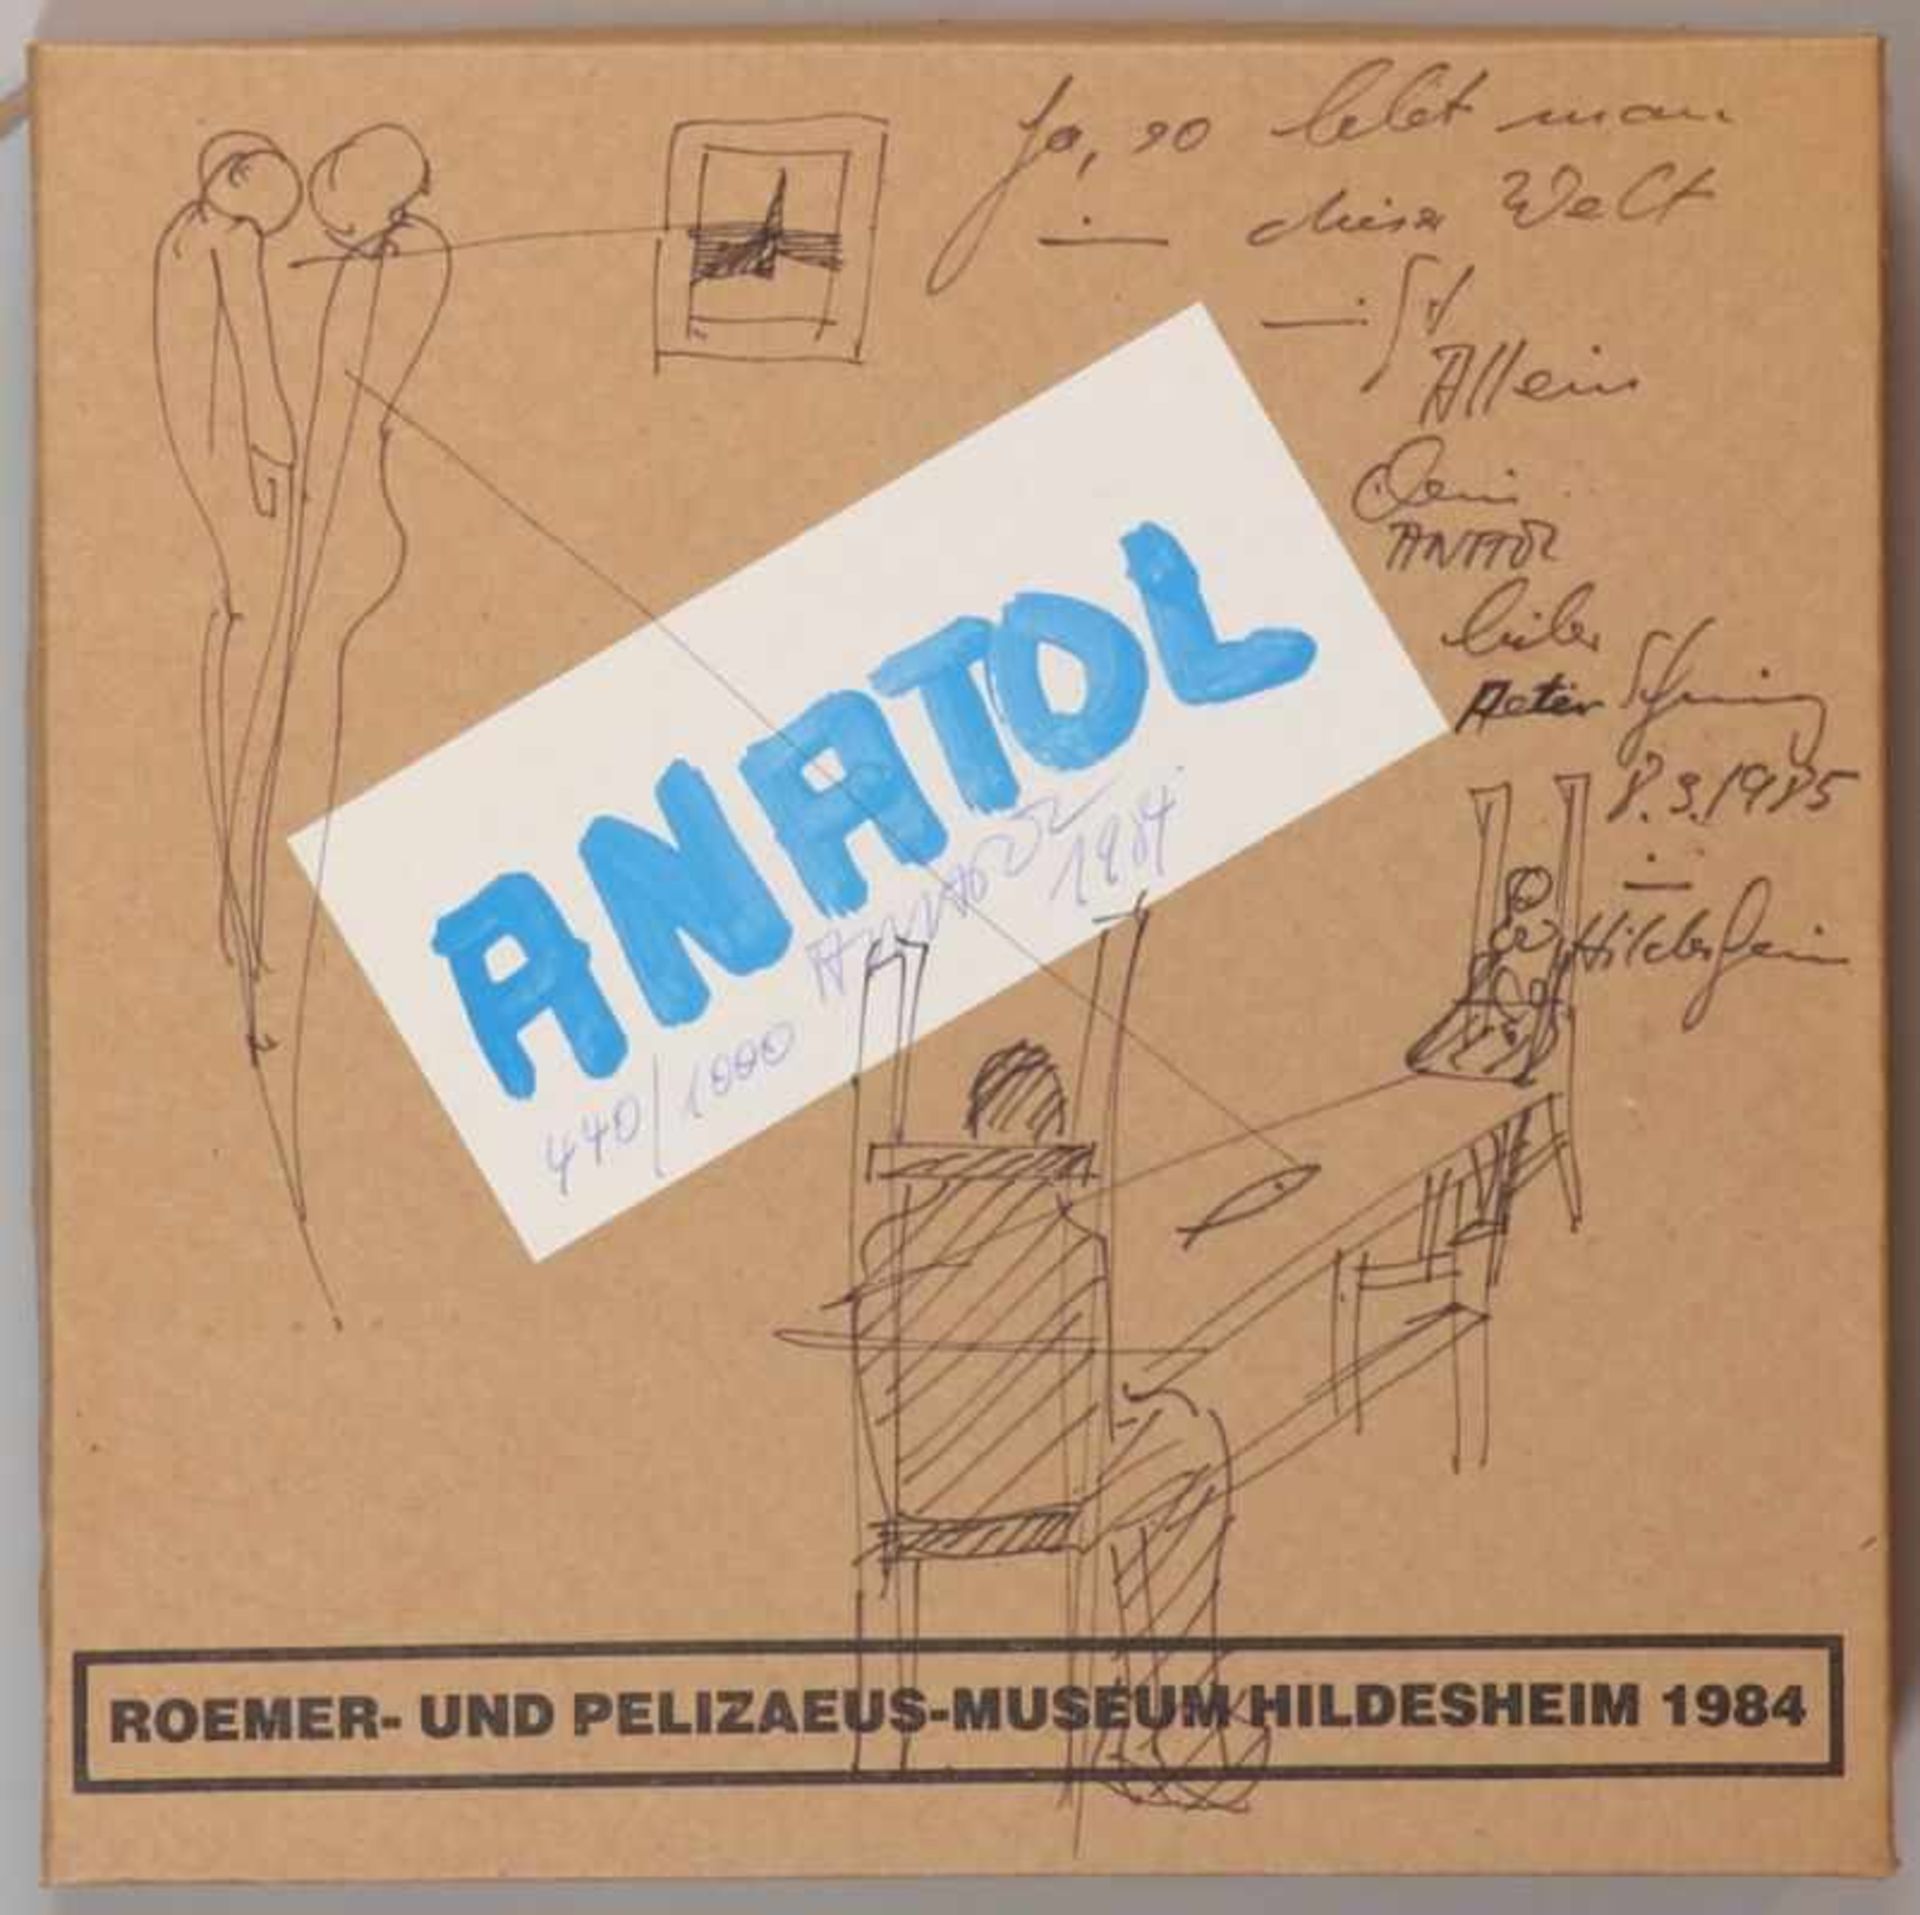 Anatol (Herzfeld)1931 Isternburg - 2019 Moers - "Roemer- und Pelizaeus-Museum Hildesheim 1984" (